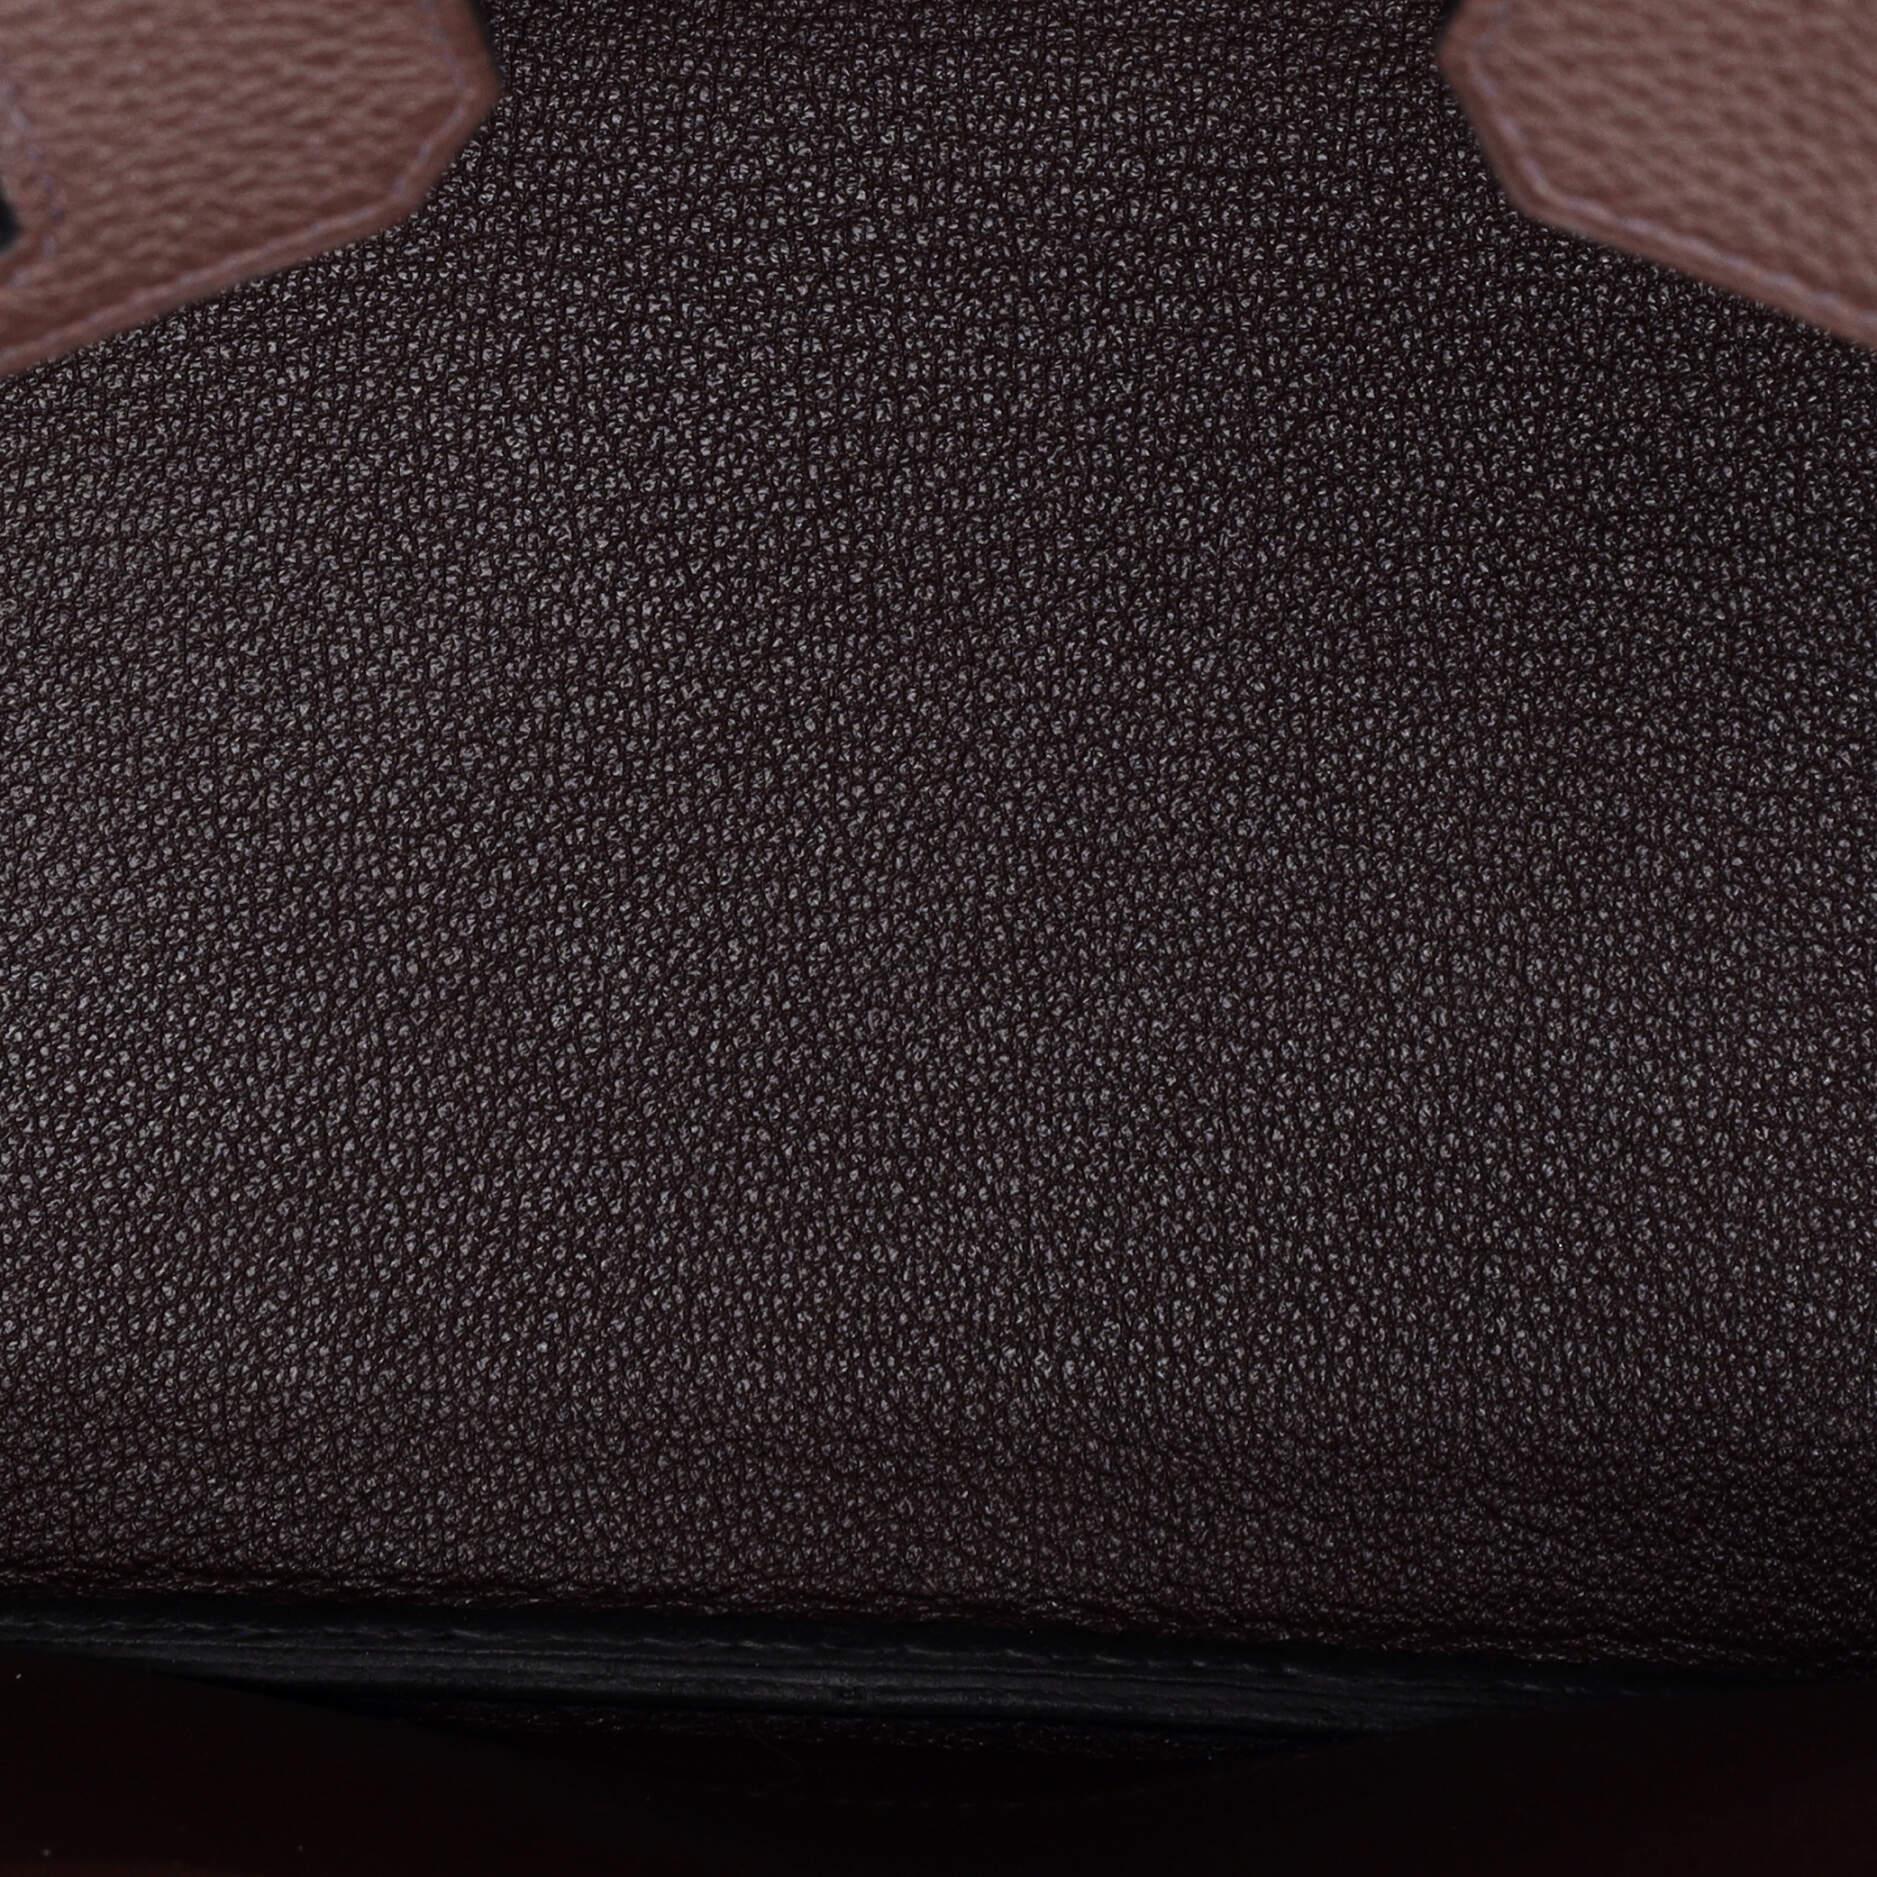 Hermes Birkin Handbag Rouge Sellier Togo with Gold Hardware 25 2